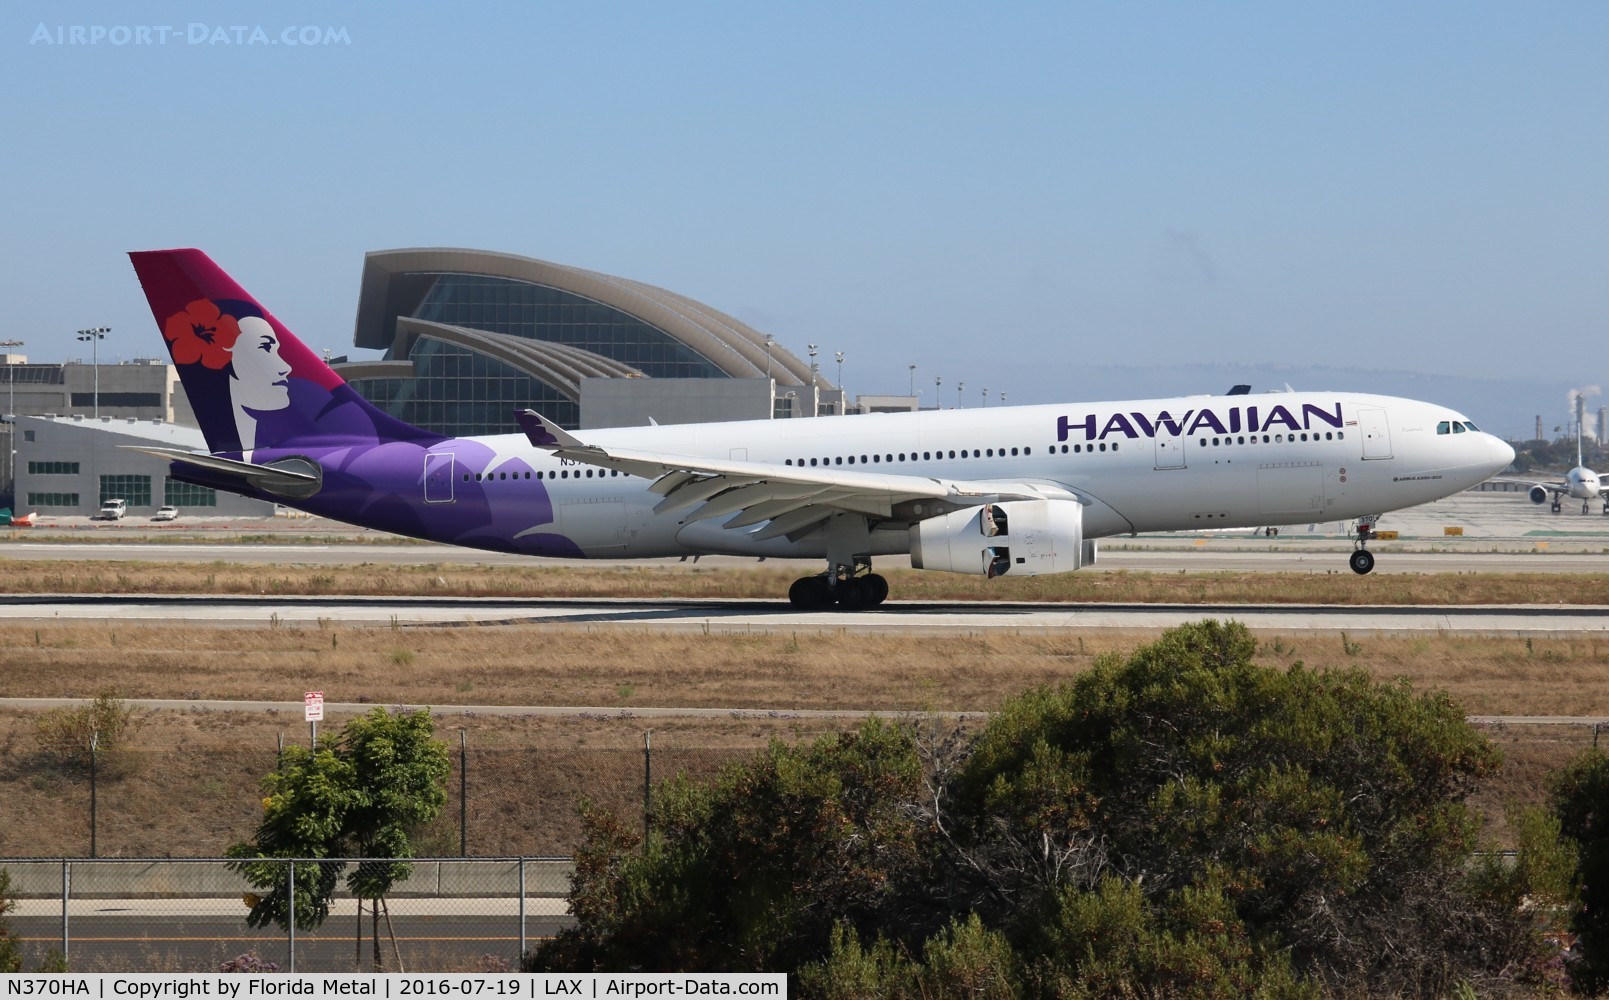 N370HA, 2014 Airbus A330-243 C/N 1511, Hawaiian